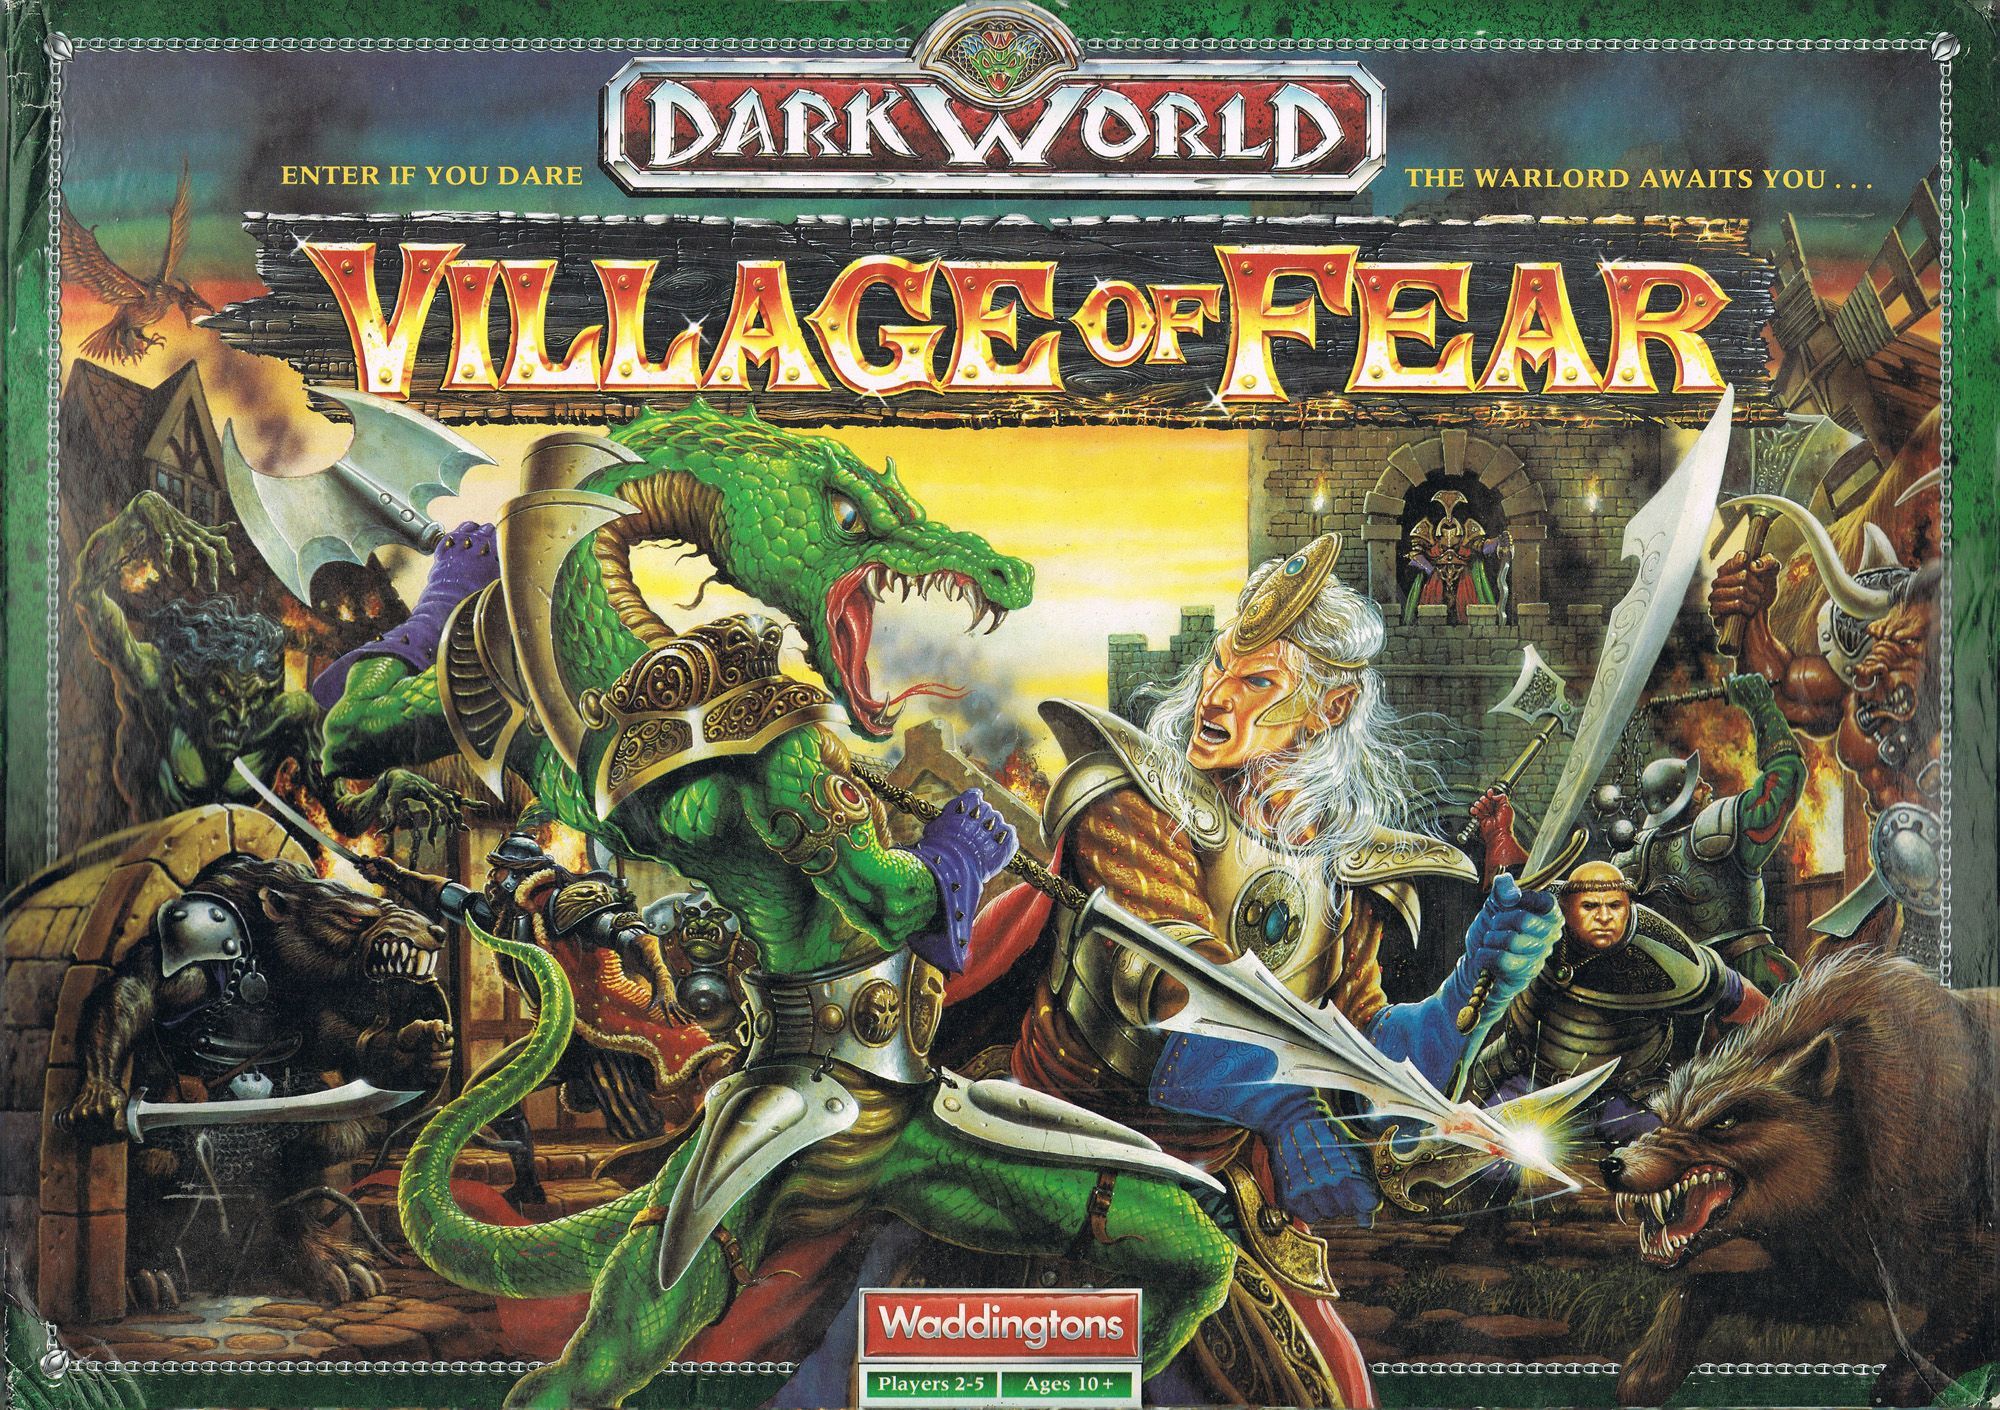 Dark World: Village of Fear